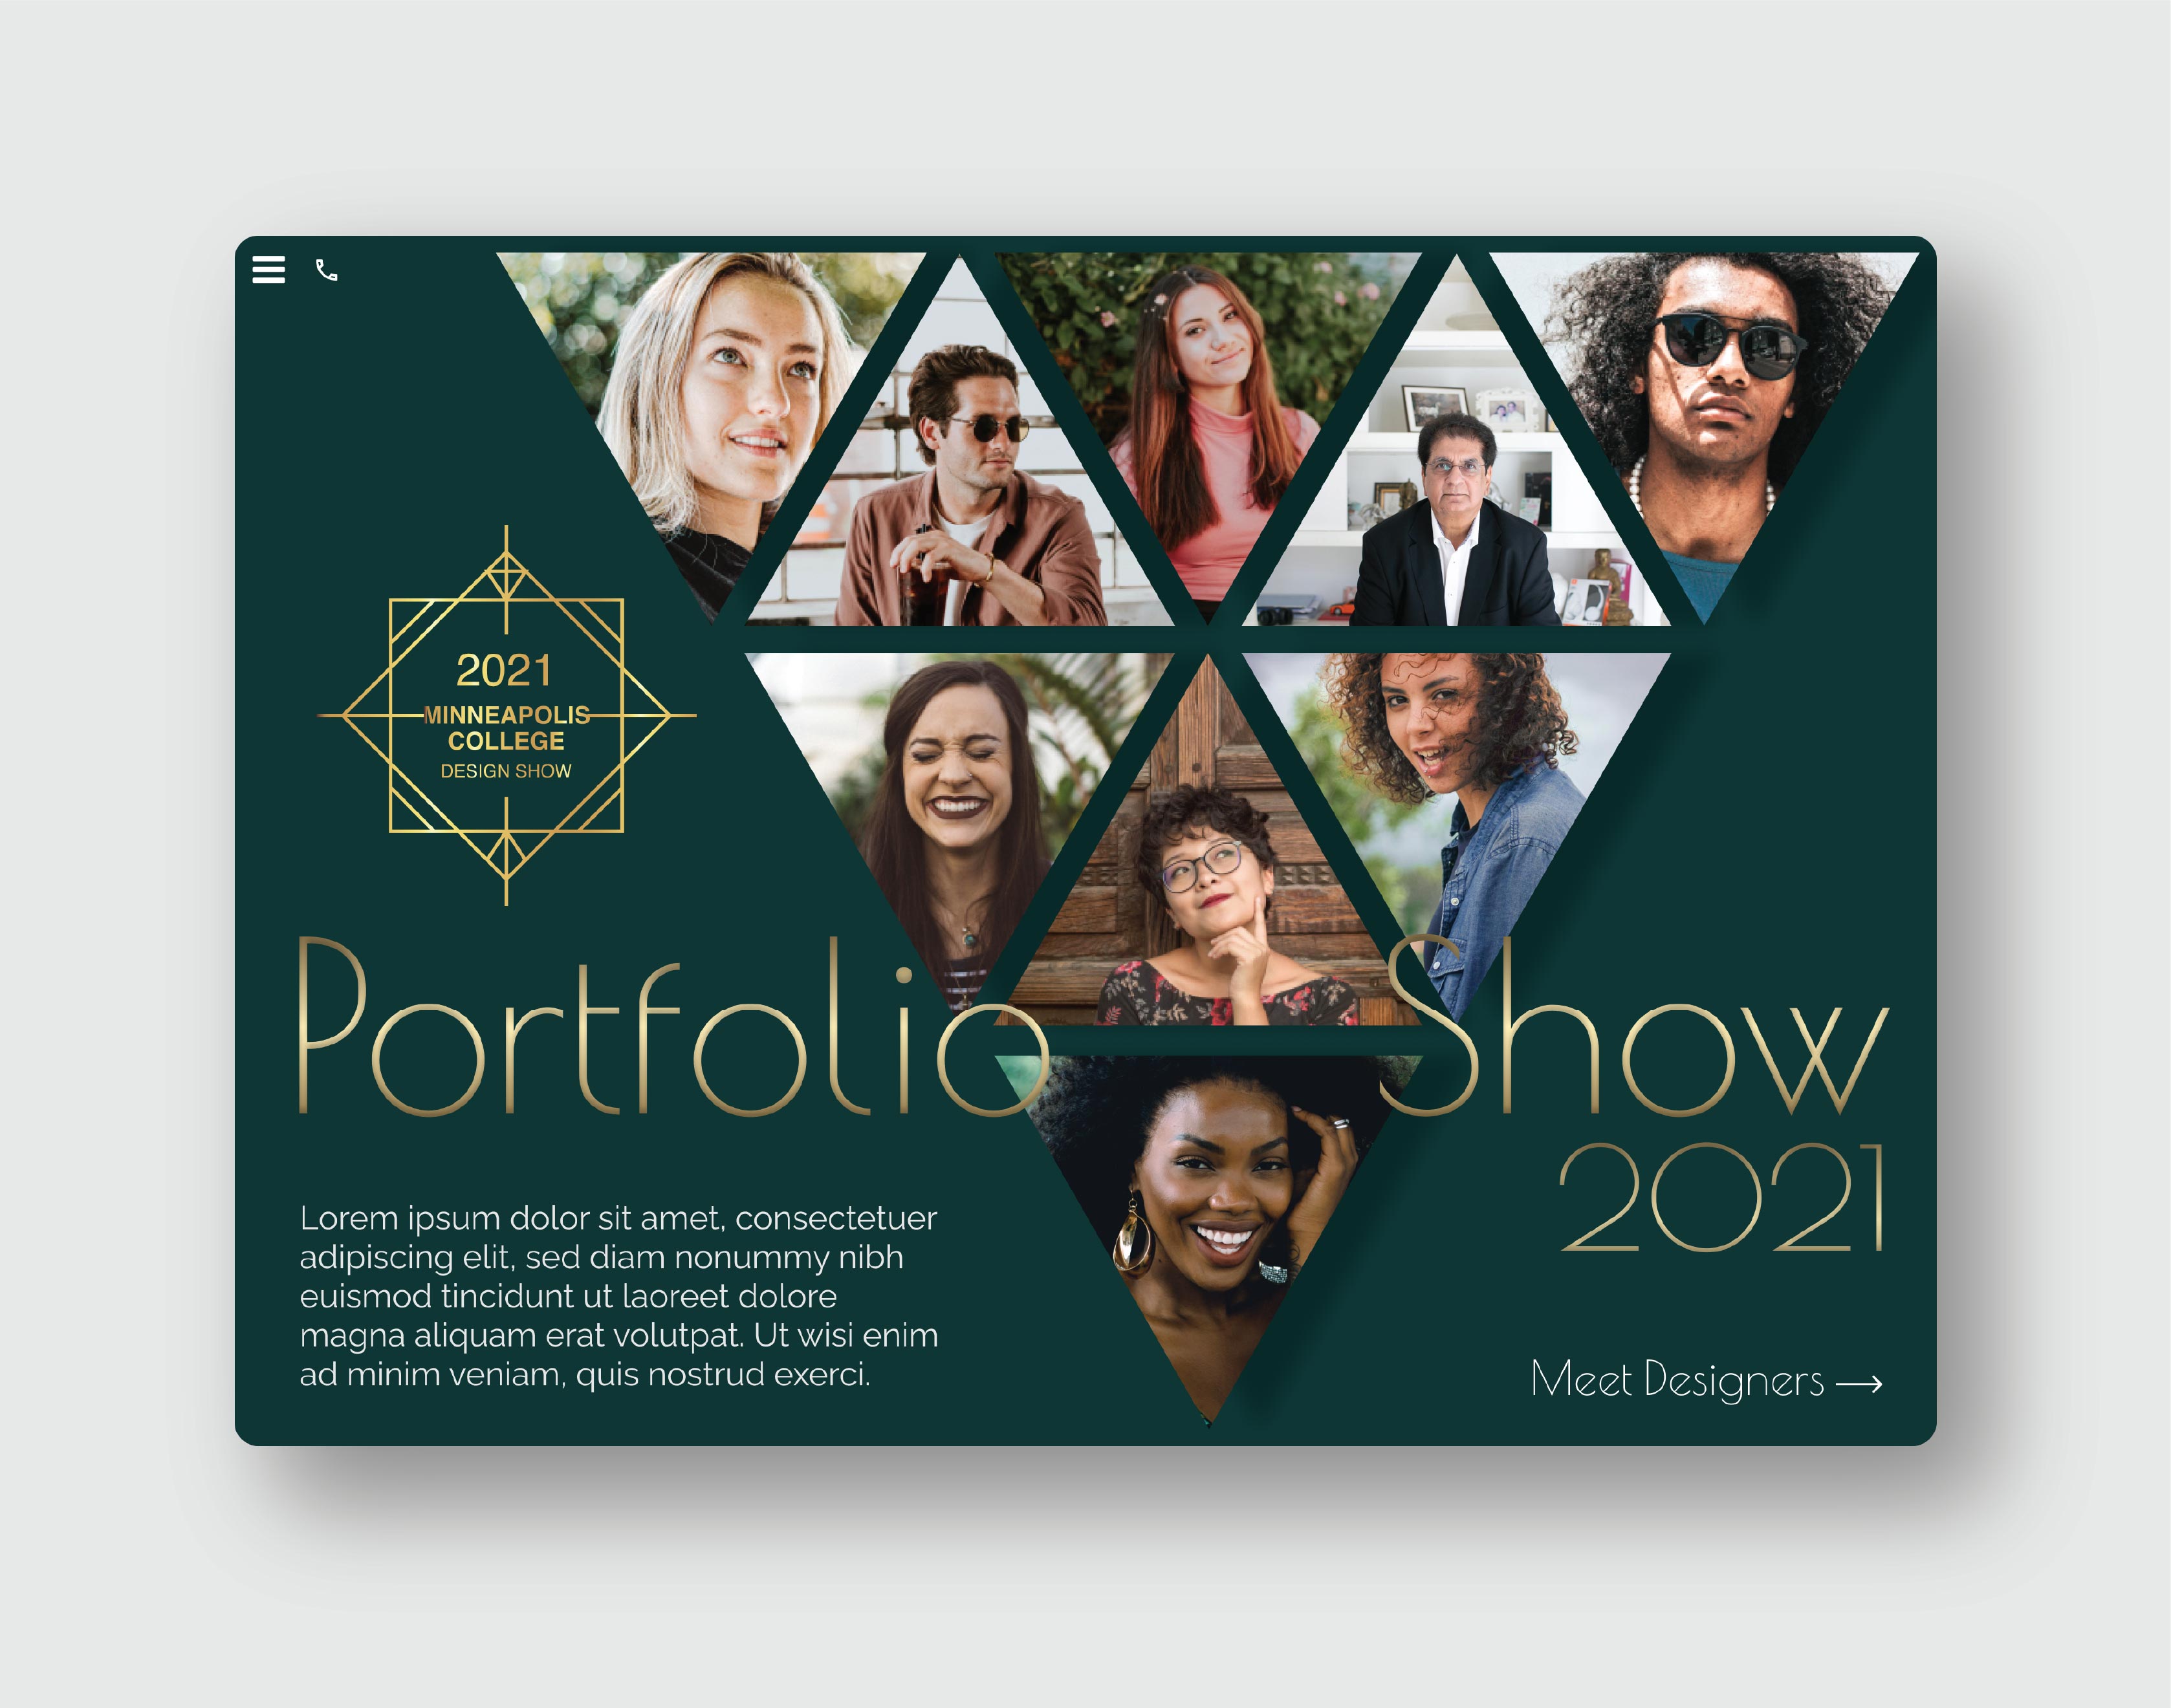 Portfolio Show 2021